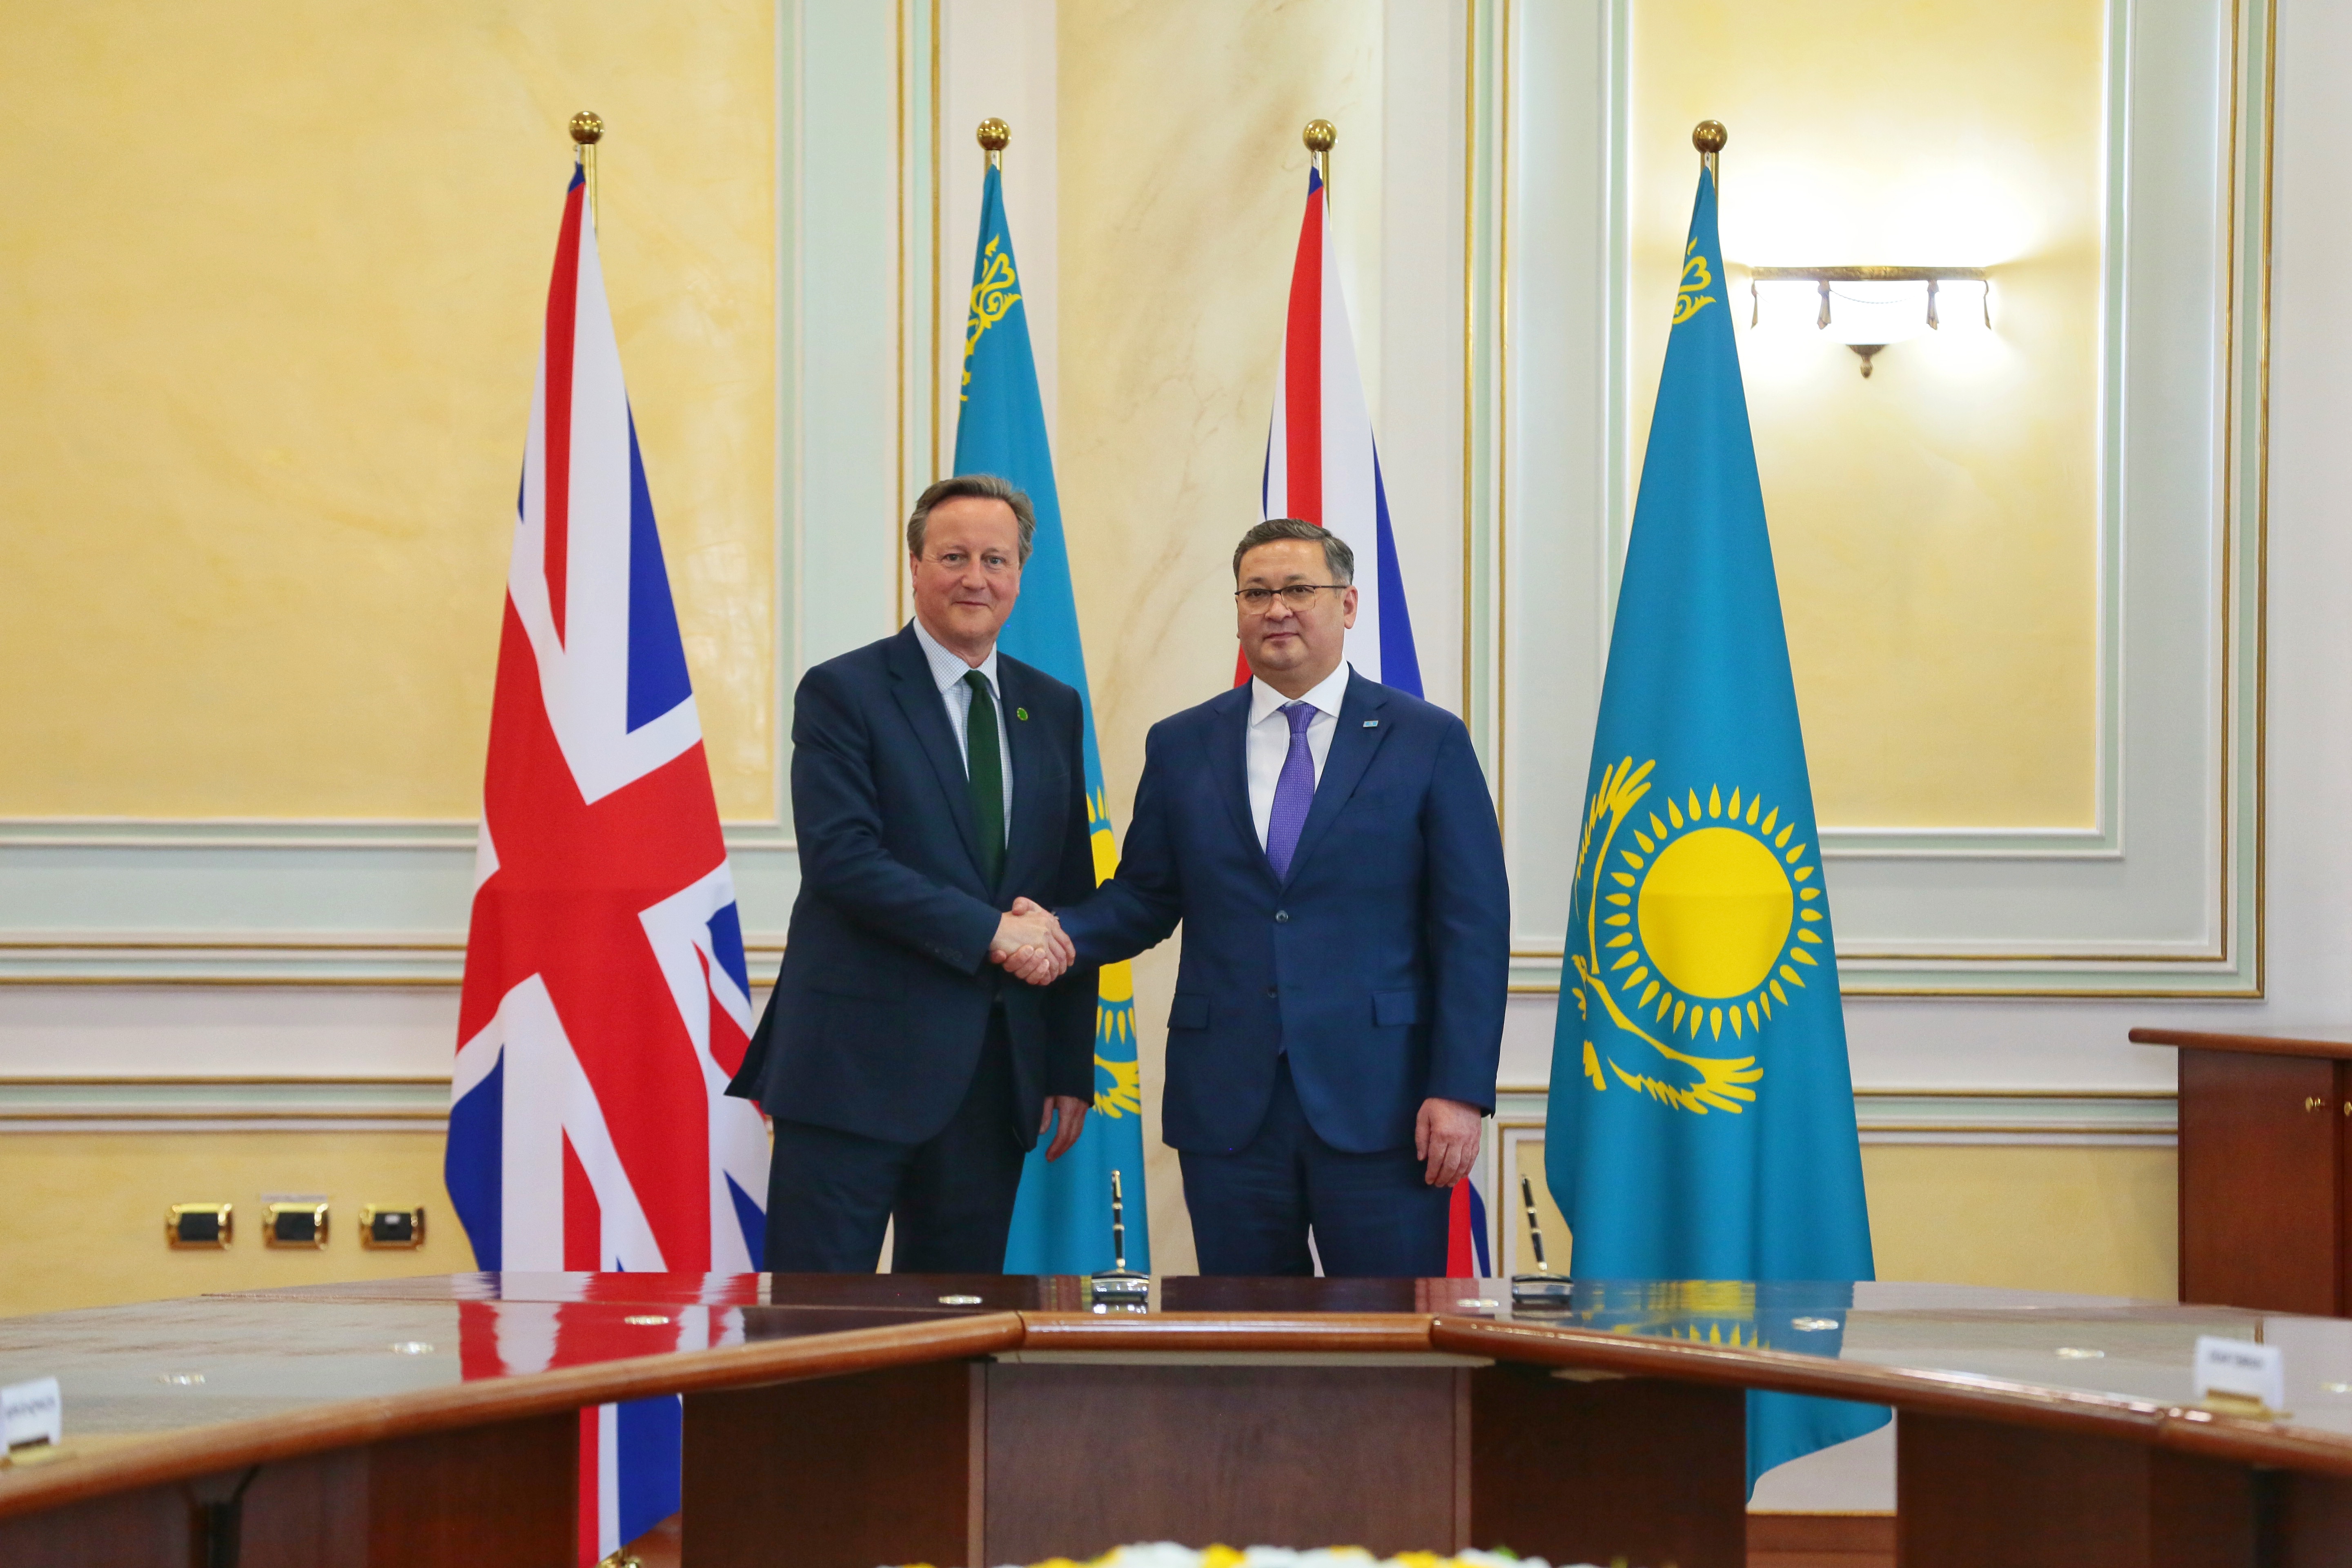 Қазақ-британ қарым-қатынасының жаңа кезеңі: Астанада стратегиялық әріптестік және ынтымақтастық туралы келісімге қол қойылды